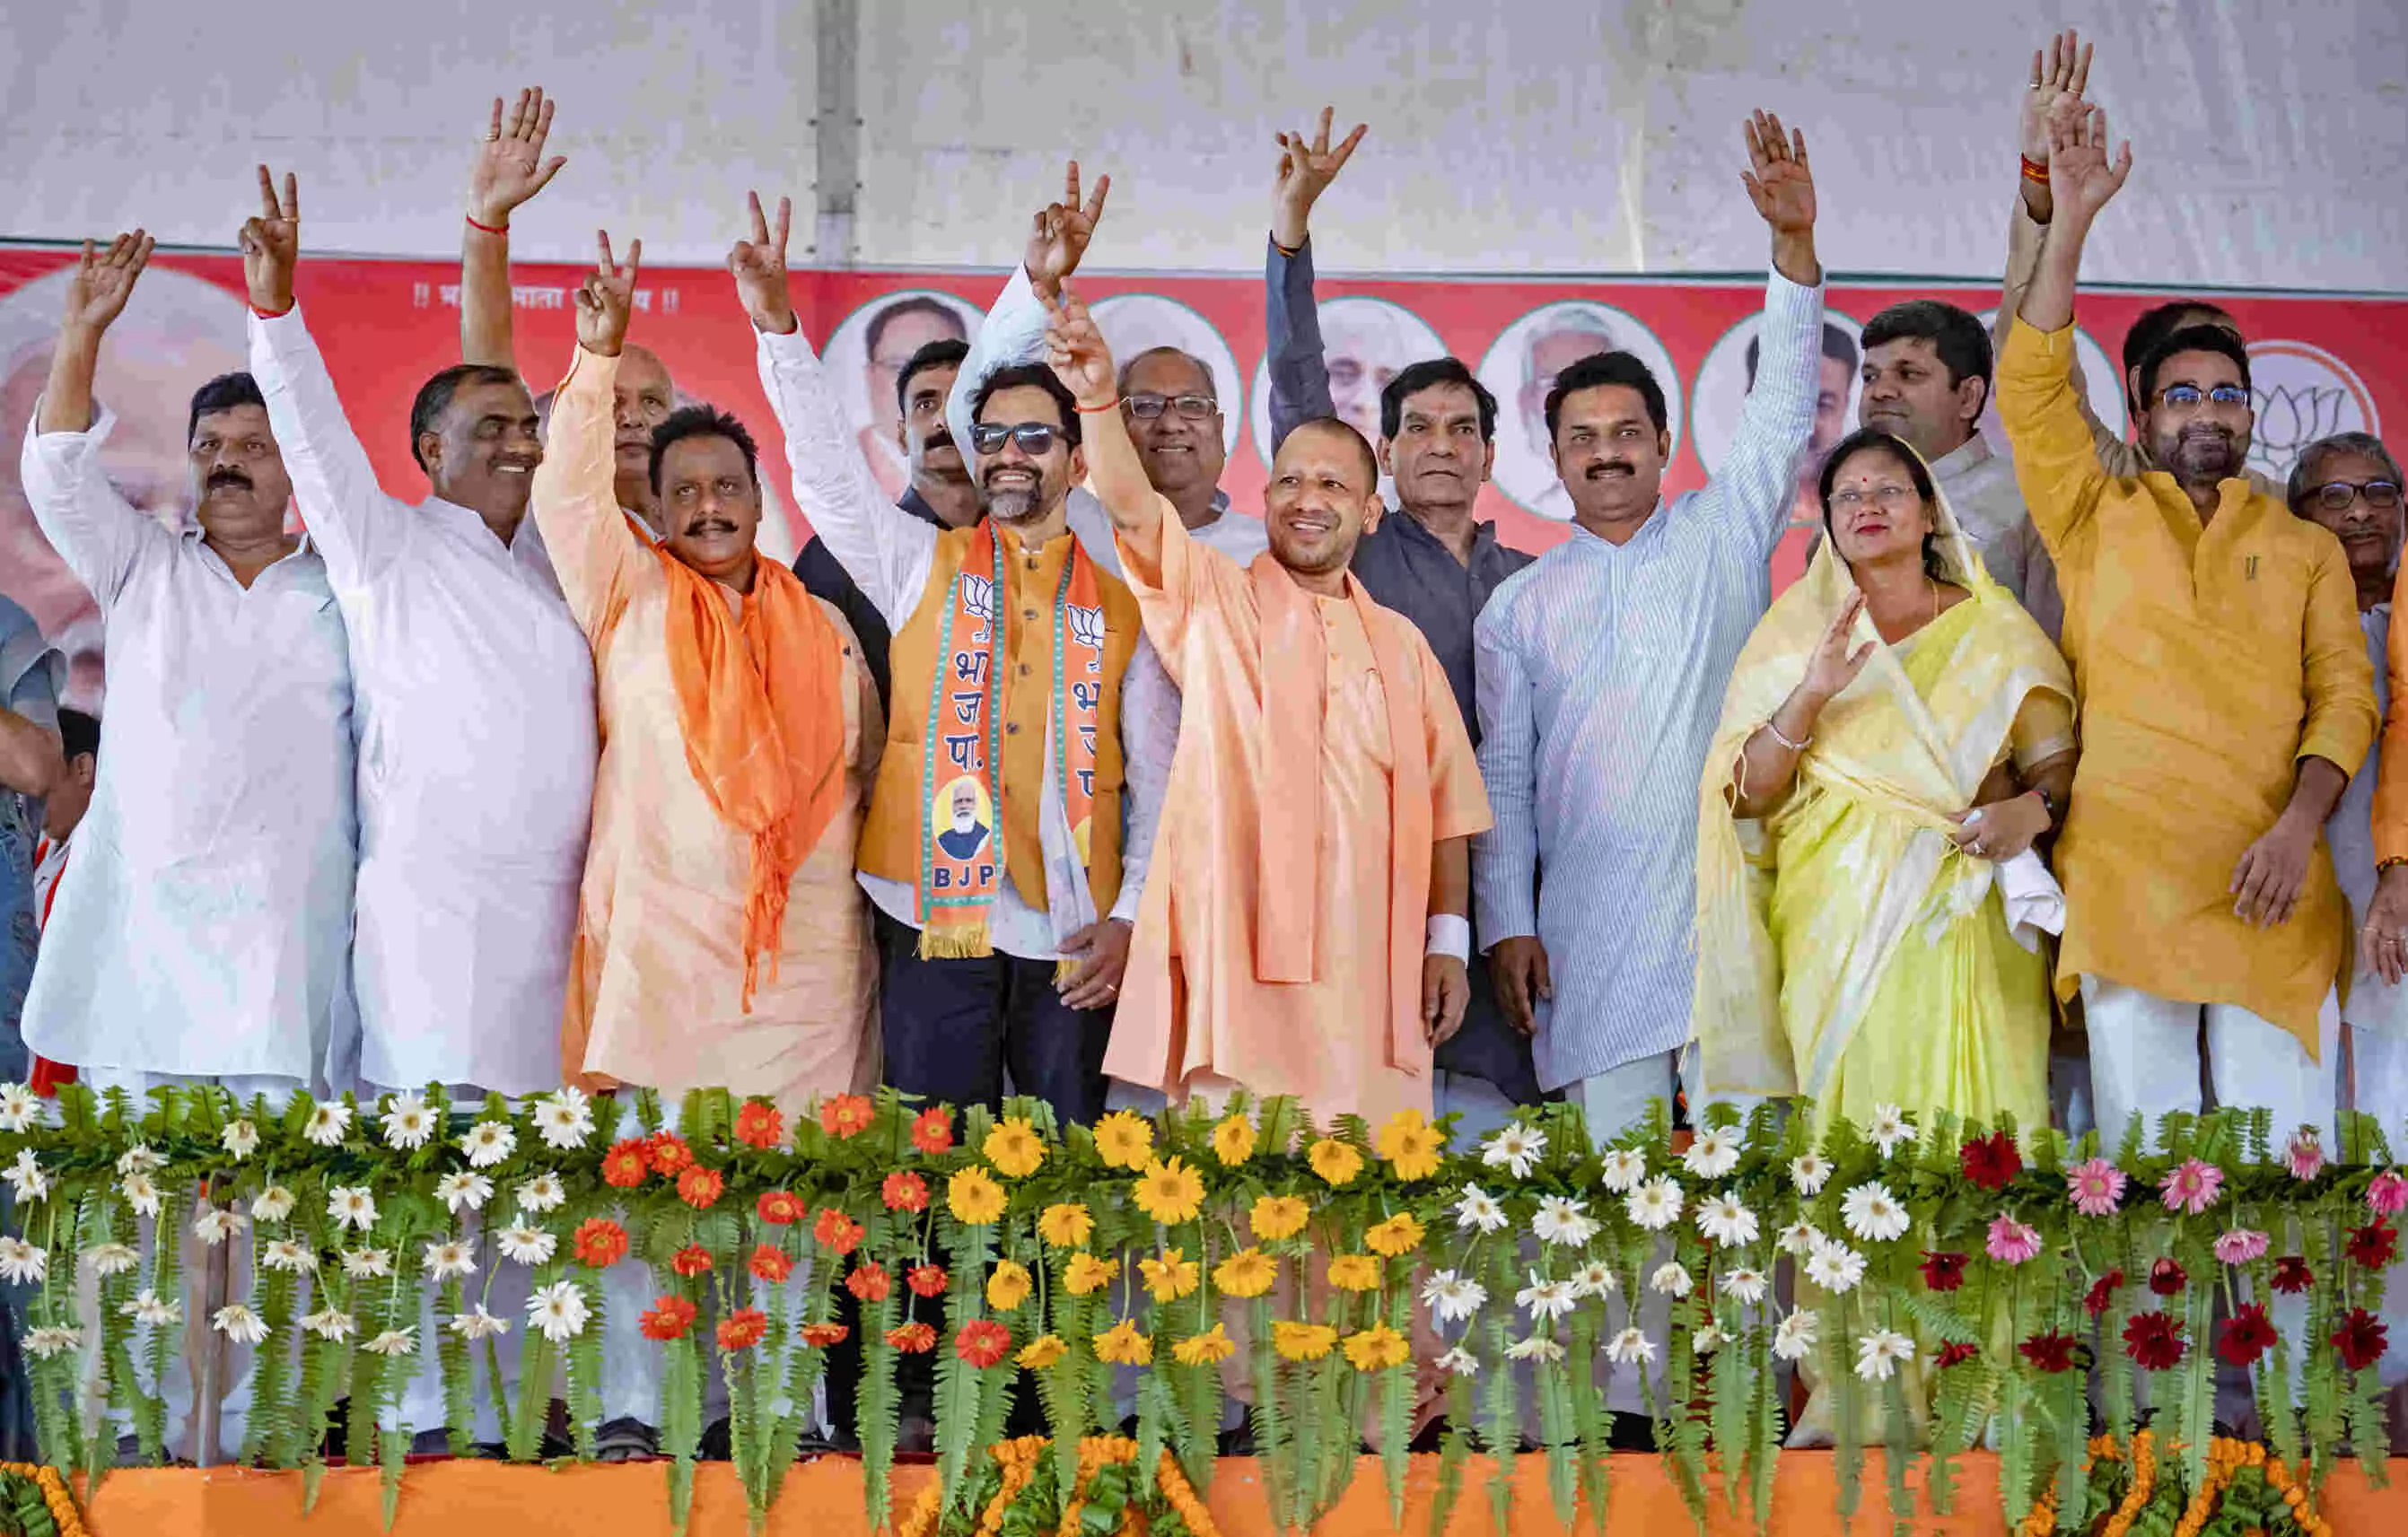 लोकसभा उप -चुनाव में सपा के गढ़ आजमगढ़ और रामपुर में बीजेपी की प्रचंड जीत,योगी आदित्यनाथ ने टवीट कर दी बधाई